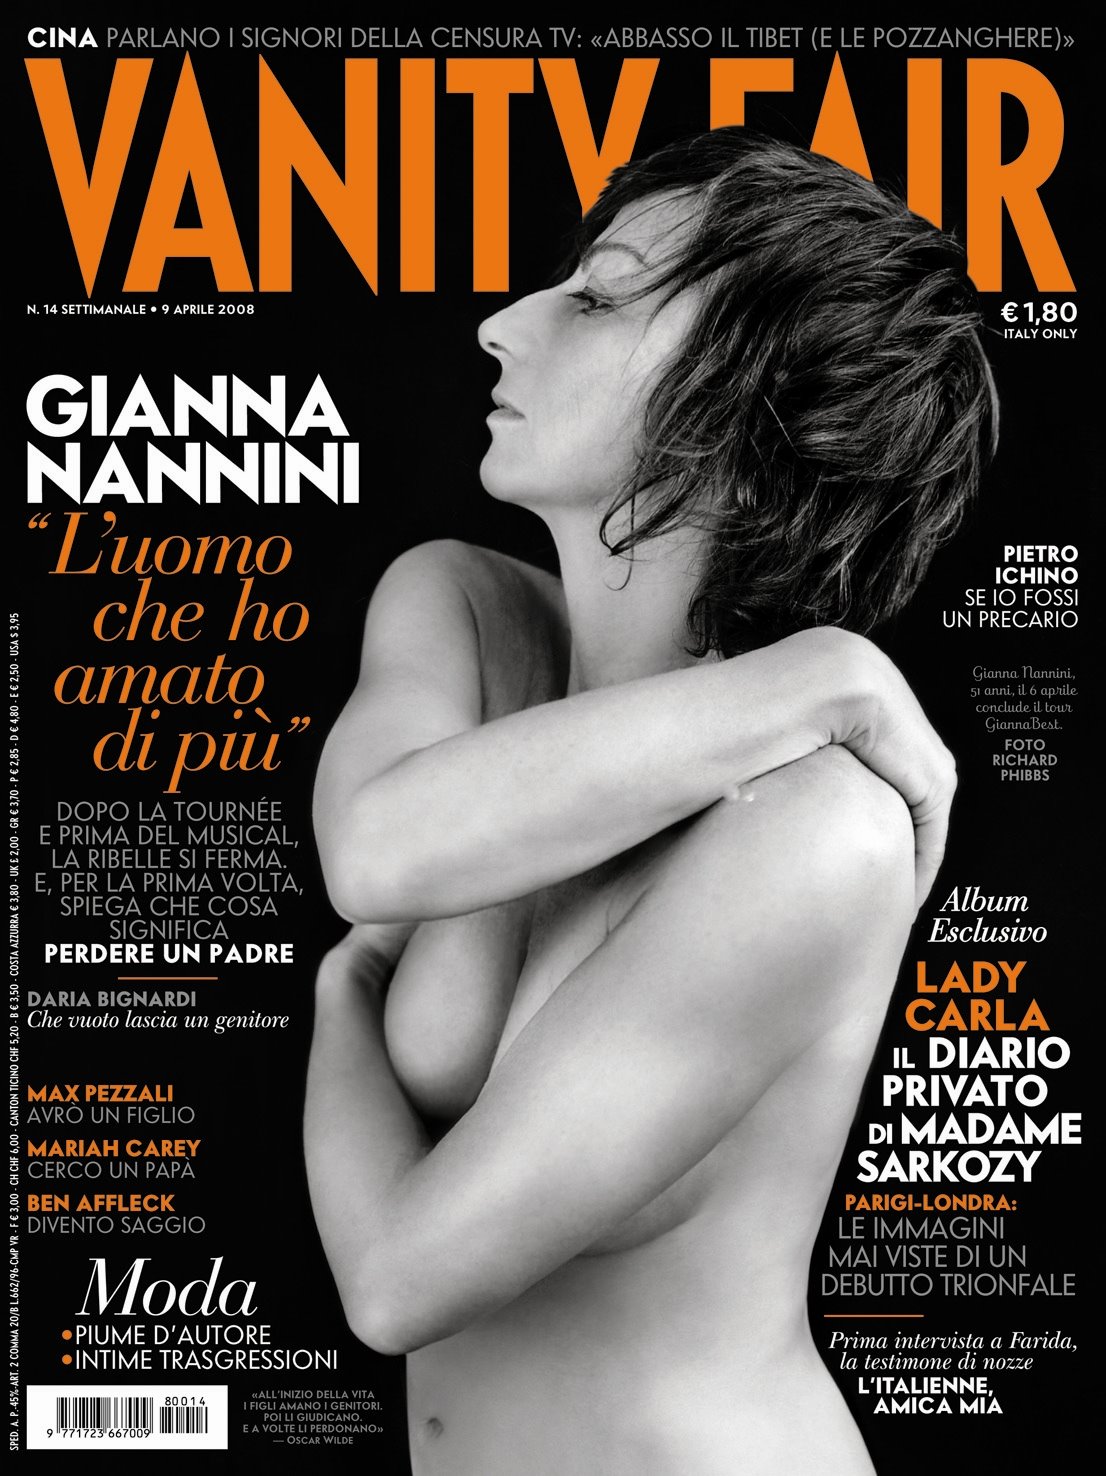 Insolite Cover Girls - Gianna Nannini e Anna Tatangelo